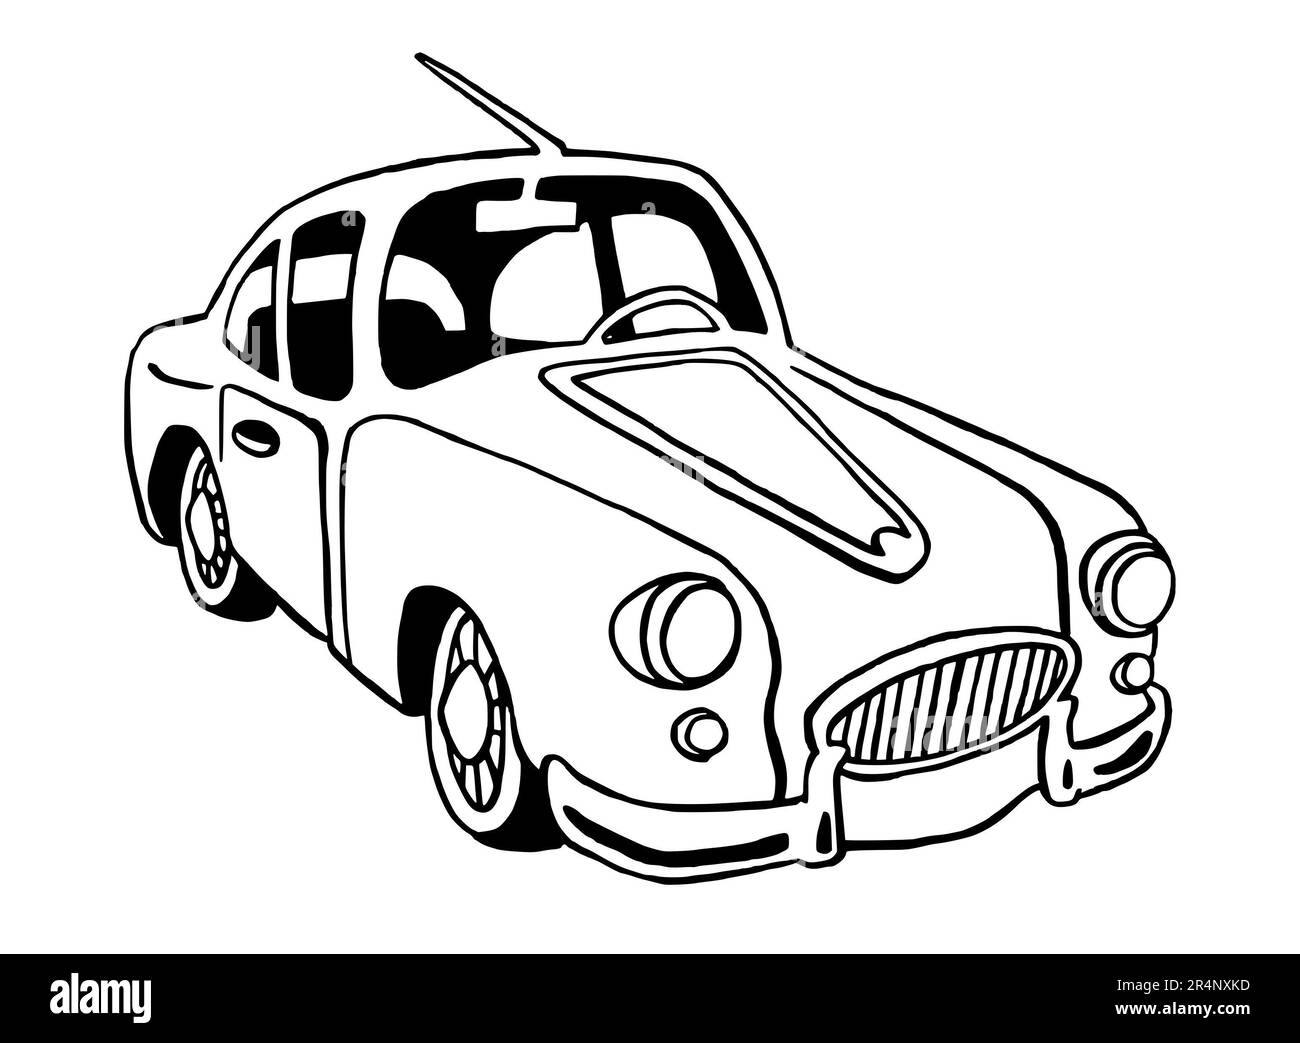 Handgezeichnete Illustration eines Retro-Autos, amerikanisch, volle Größe, isoliert auf weißem Hintergrund, mit schwarzer Strichzeichnung Stockfoto